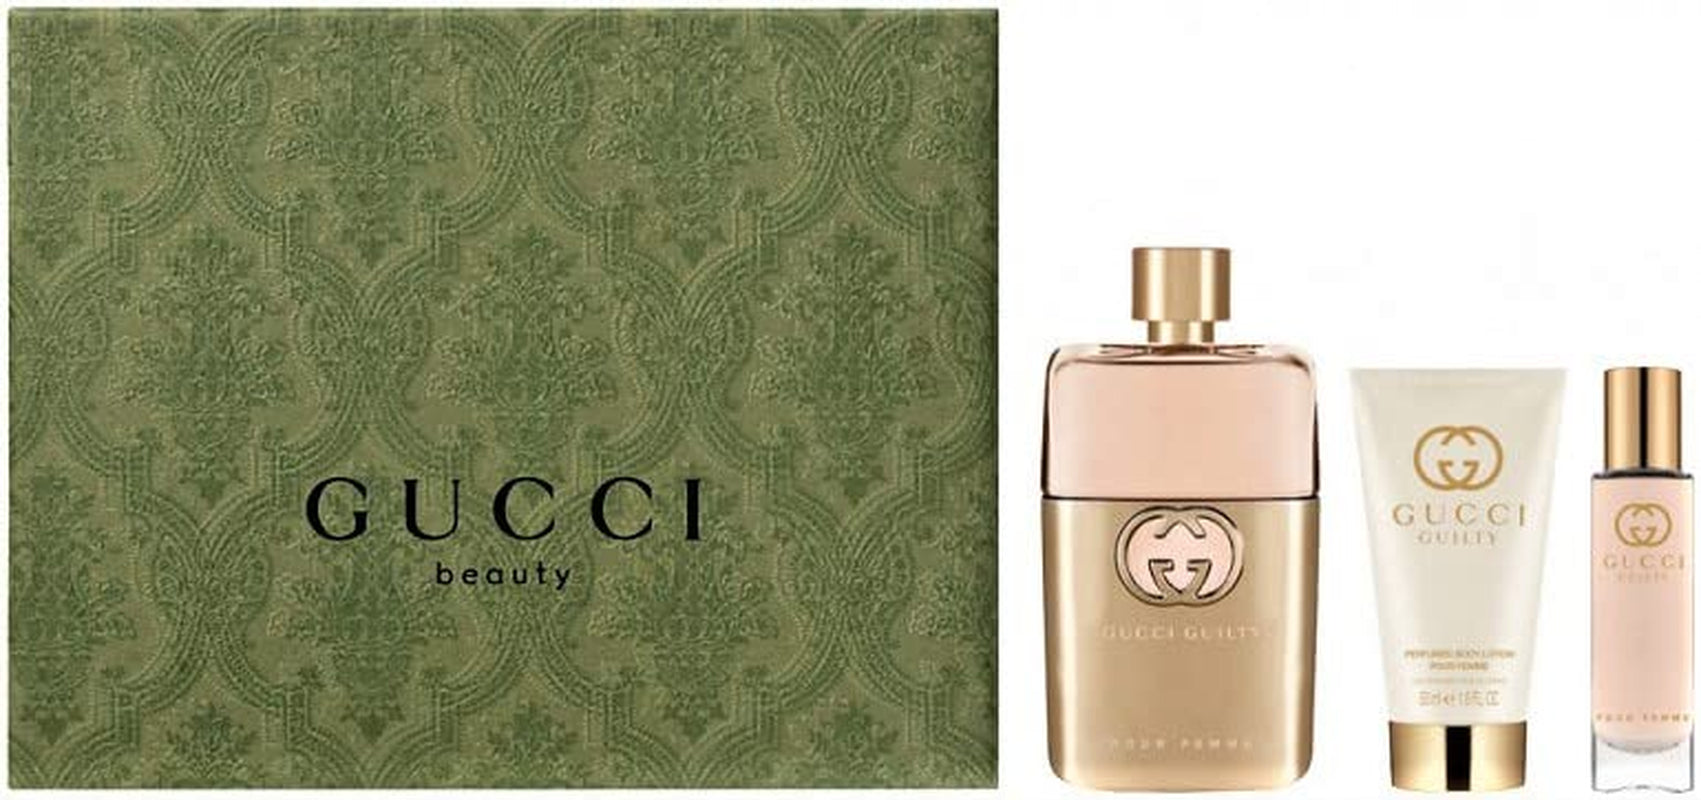 GUCCI GUILTY POUR HOMME EAU DE TOILETTE perfume by Gucci – Wikiparfum